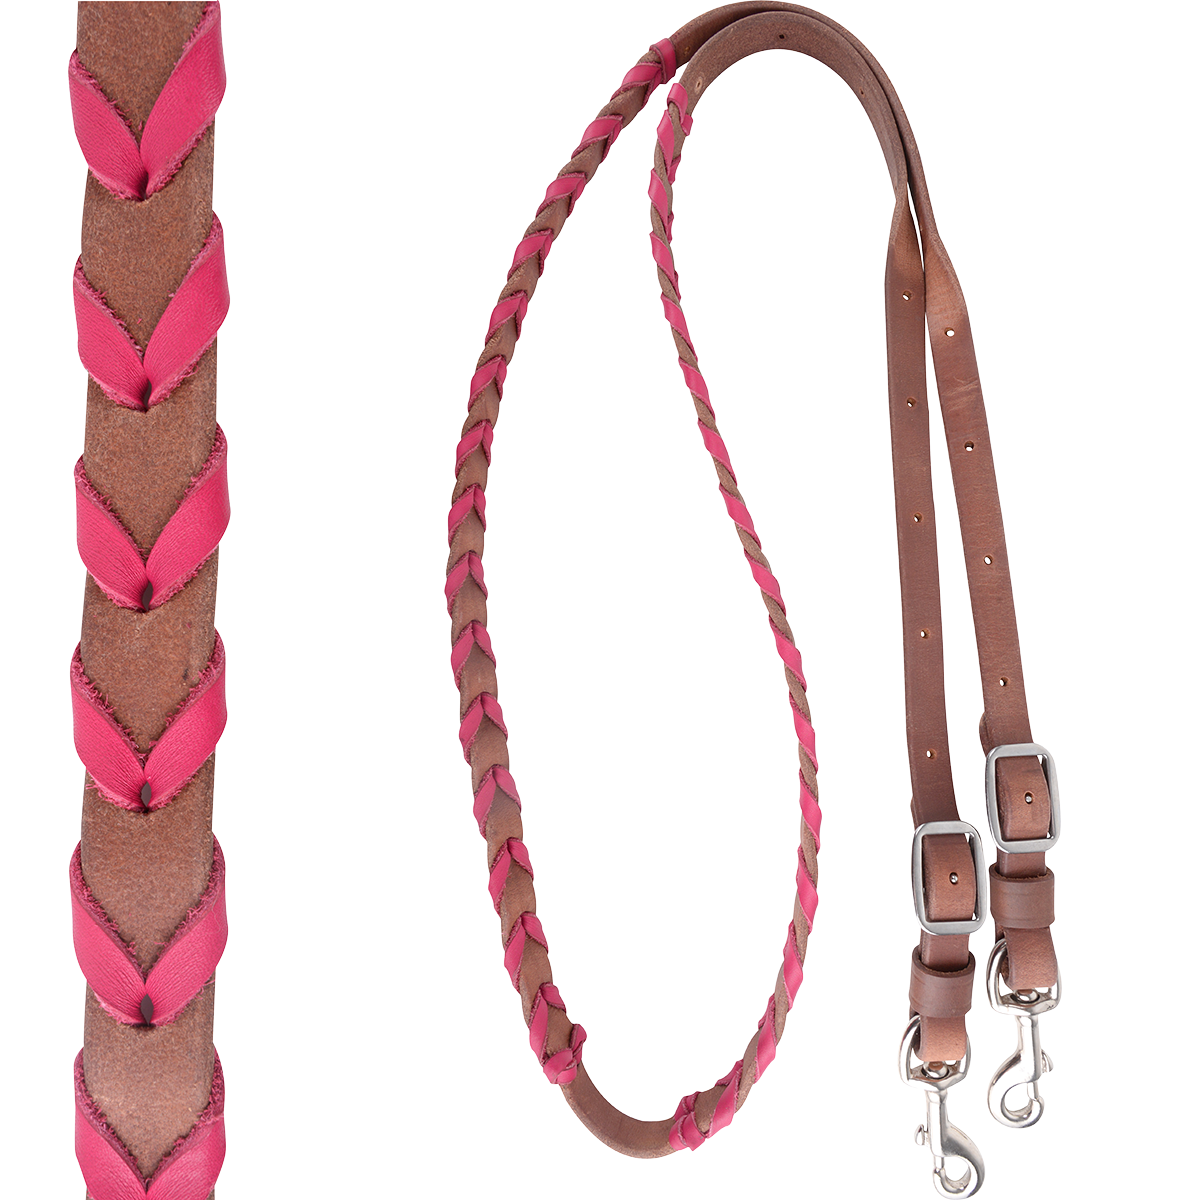 Zügel - Fasszügel mit türkiser oder rosafarbener Latigo-Schnürung 5/8" Leder